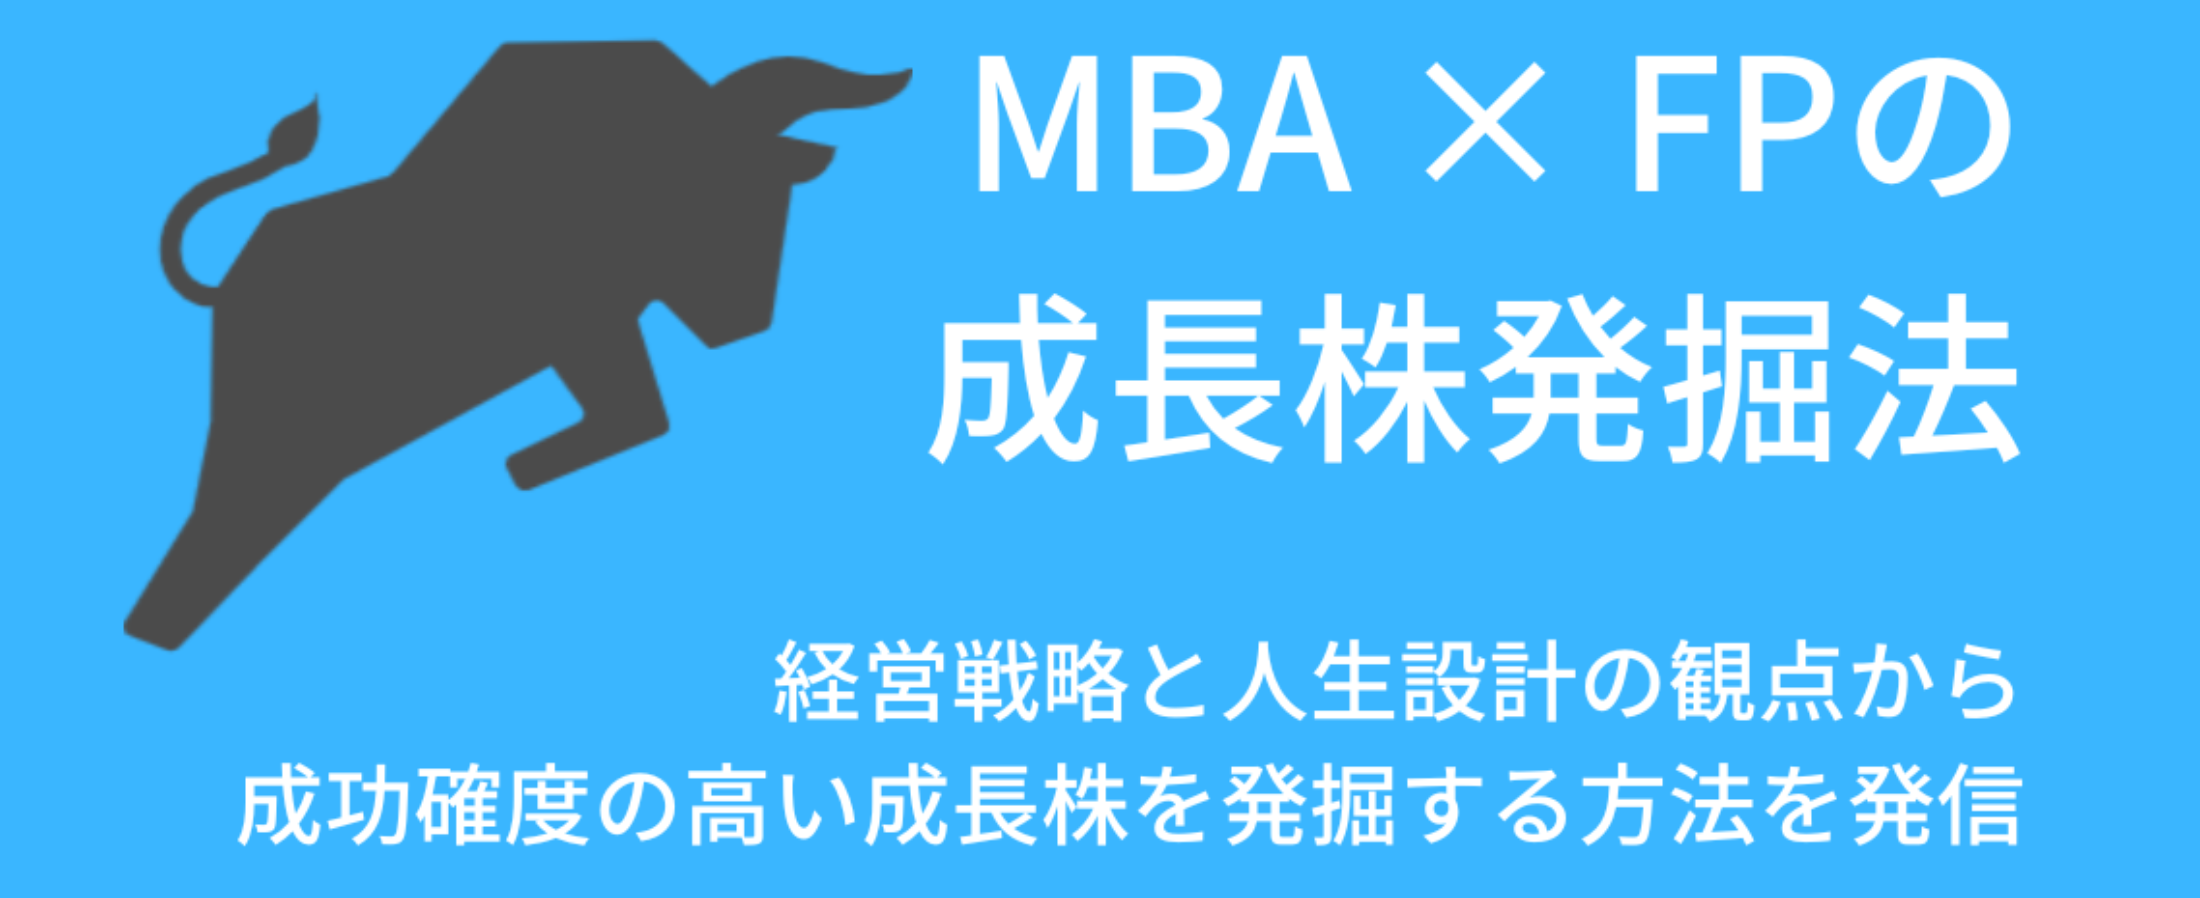 MBA × FPの成長株発掘法